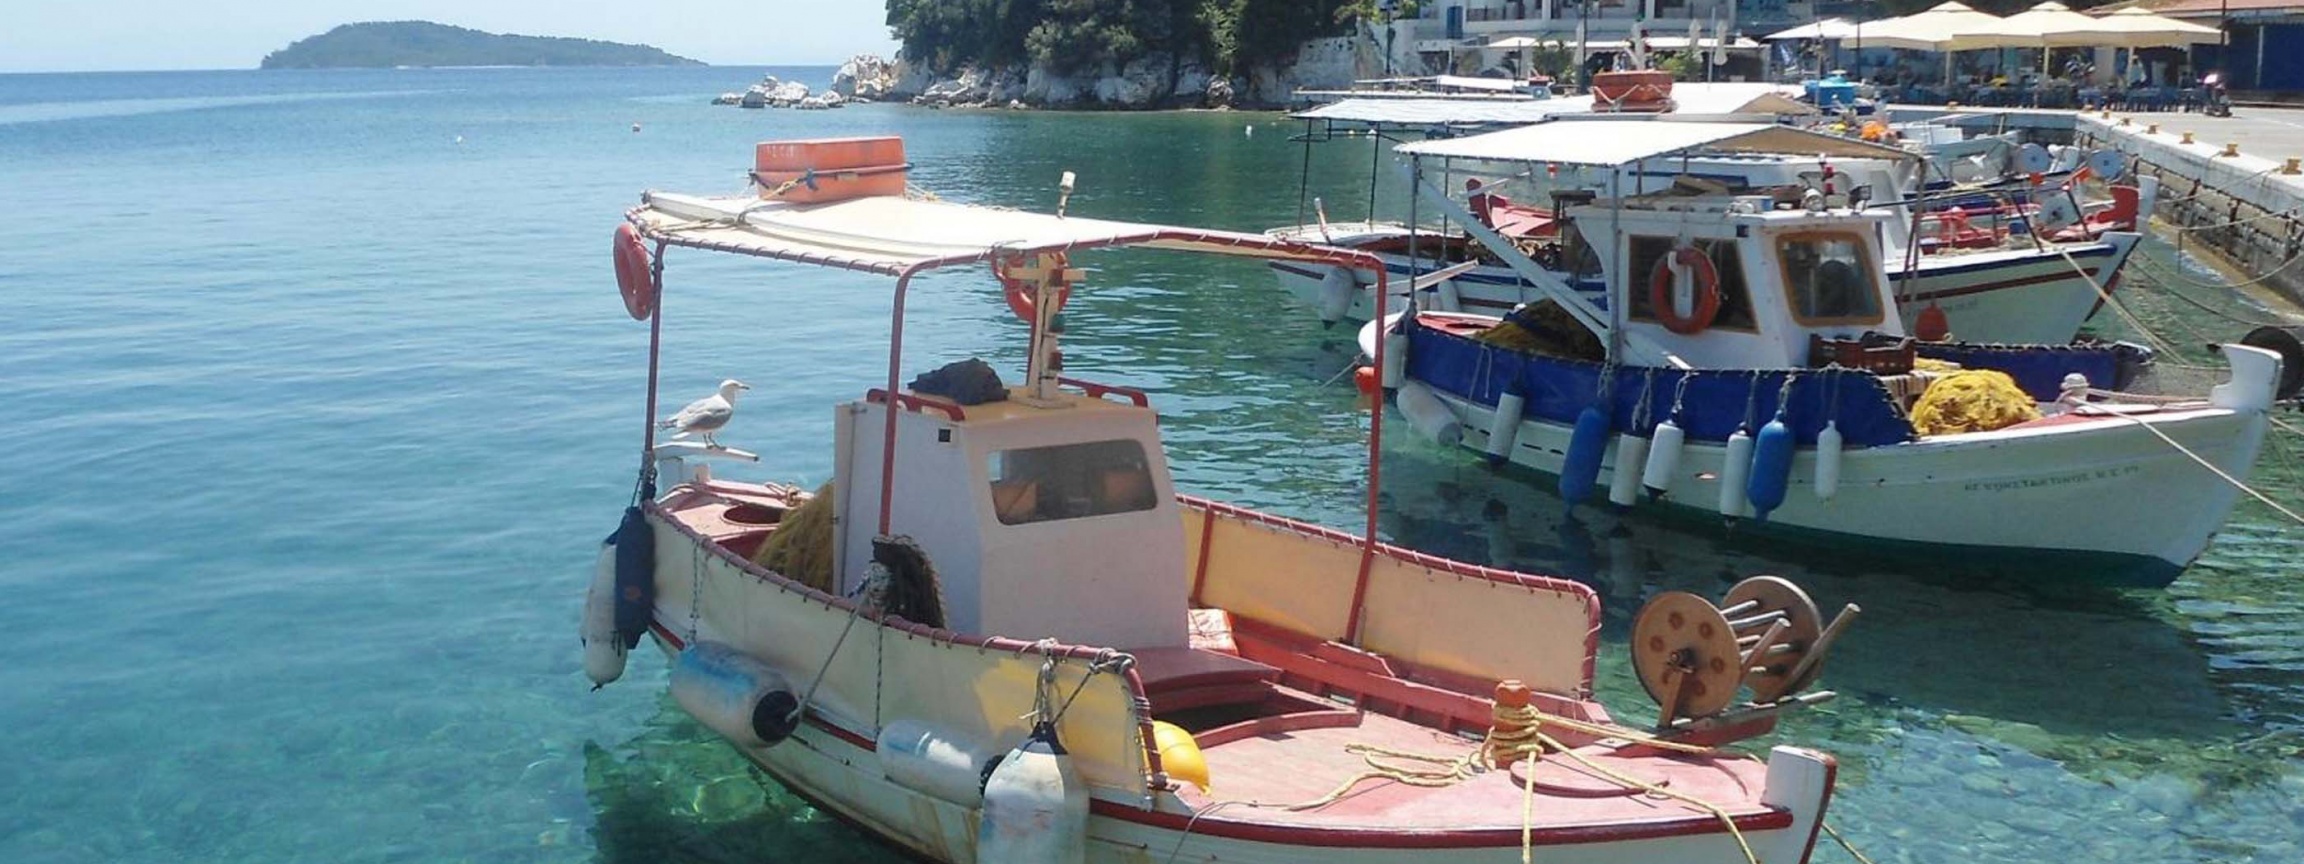 Skiathos Plakes Pier Sporades Thessalia Sterea Ellada Greece